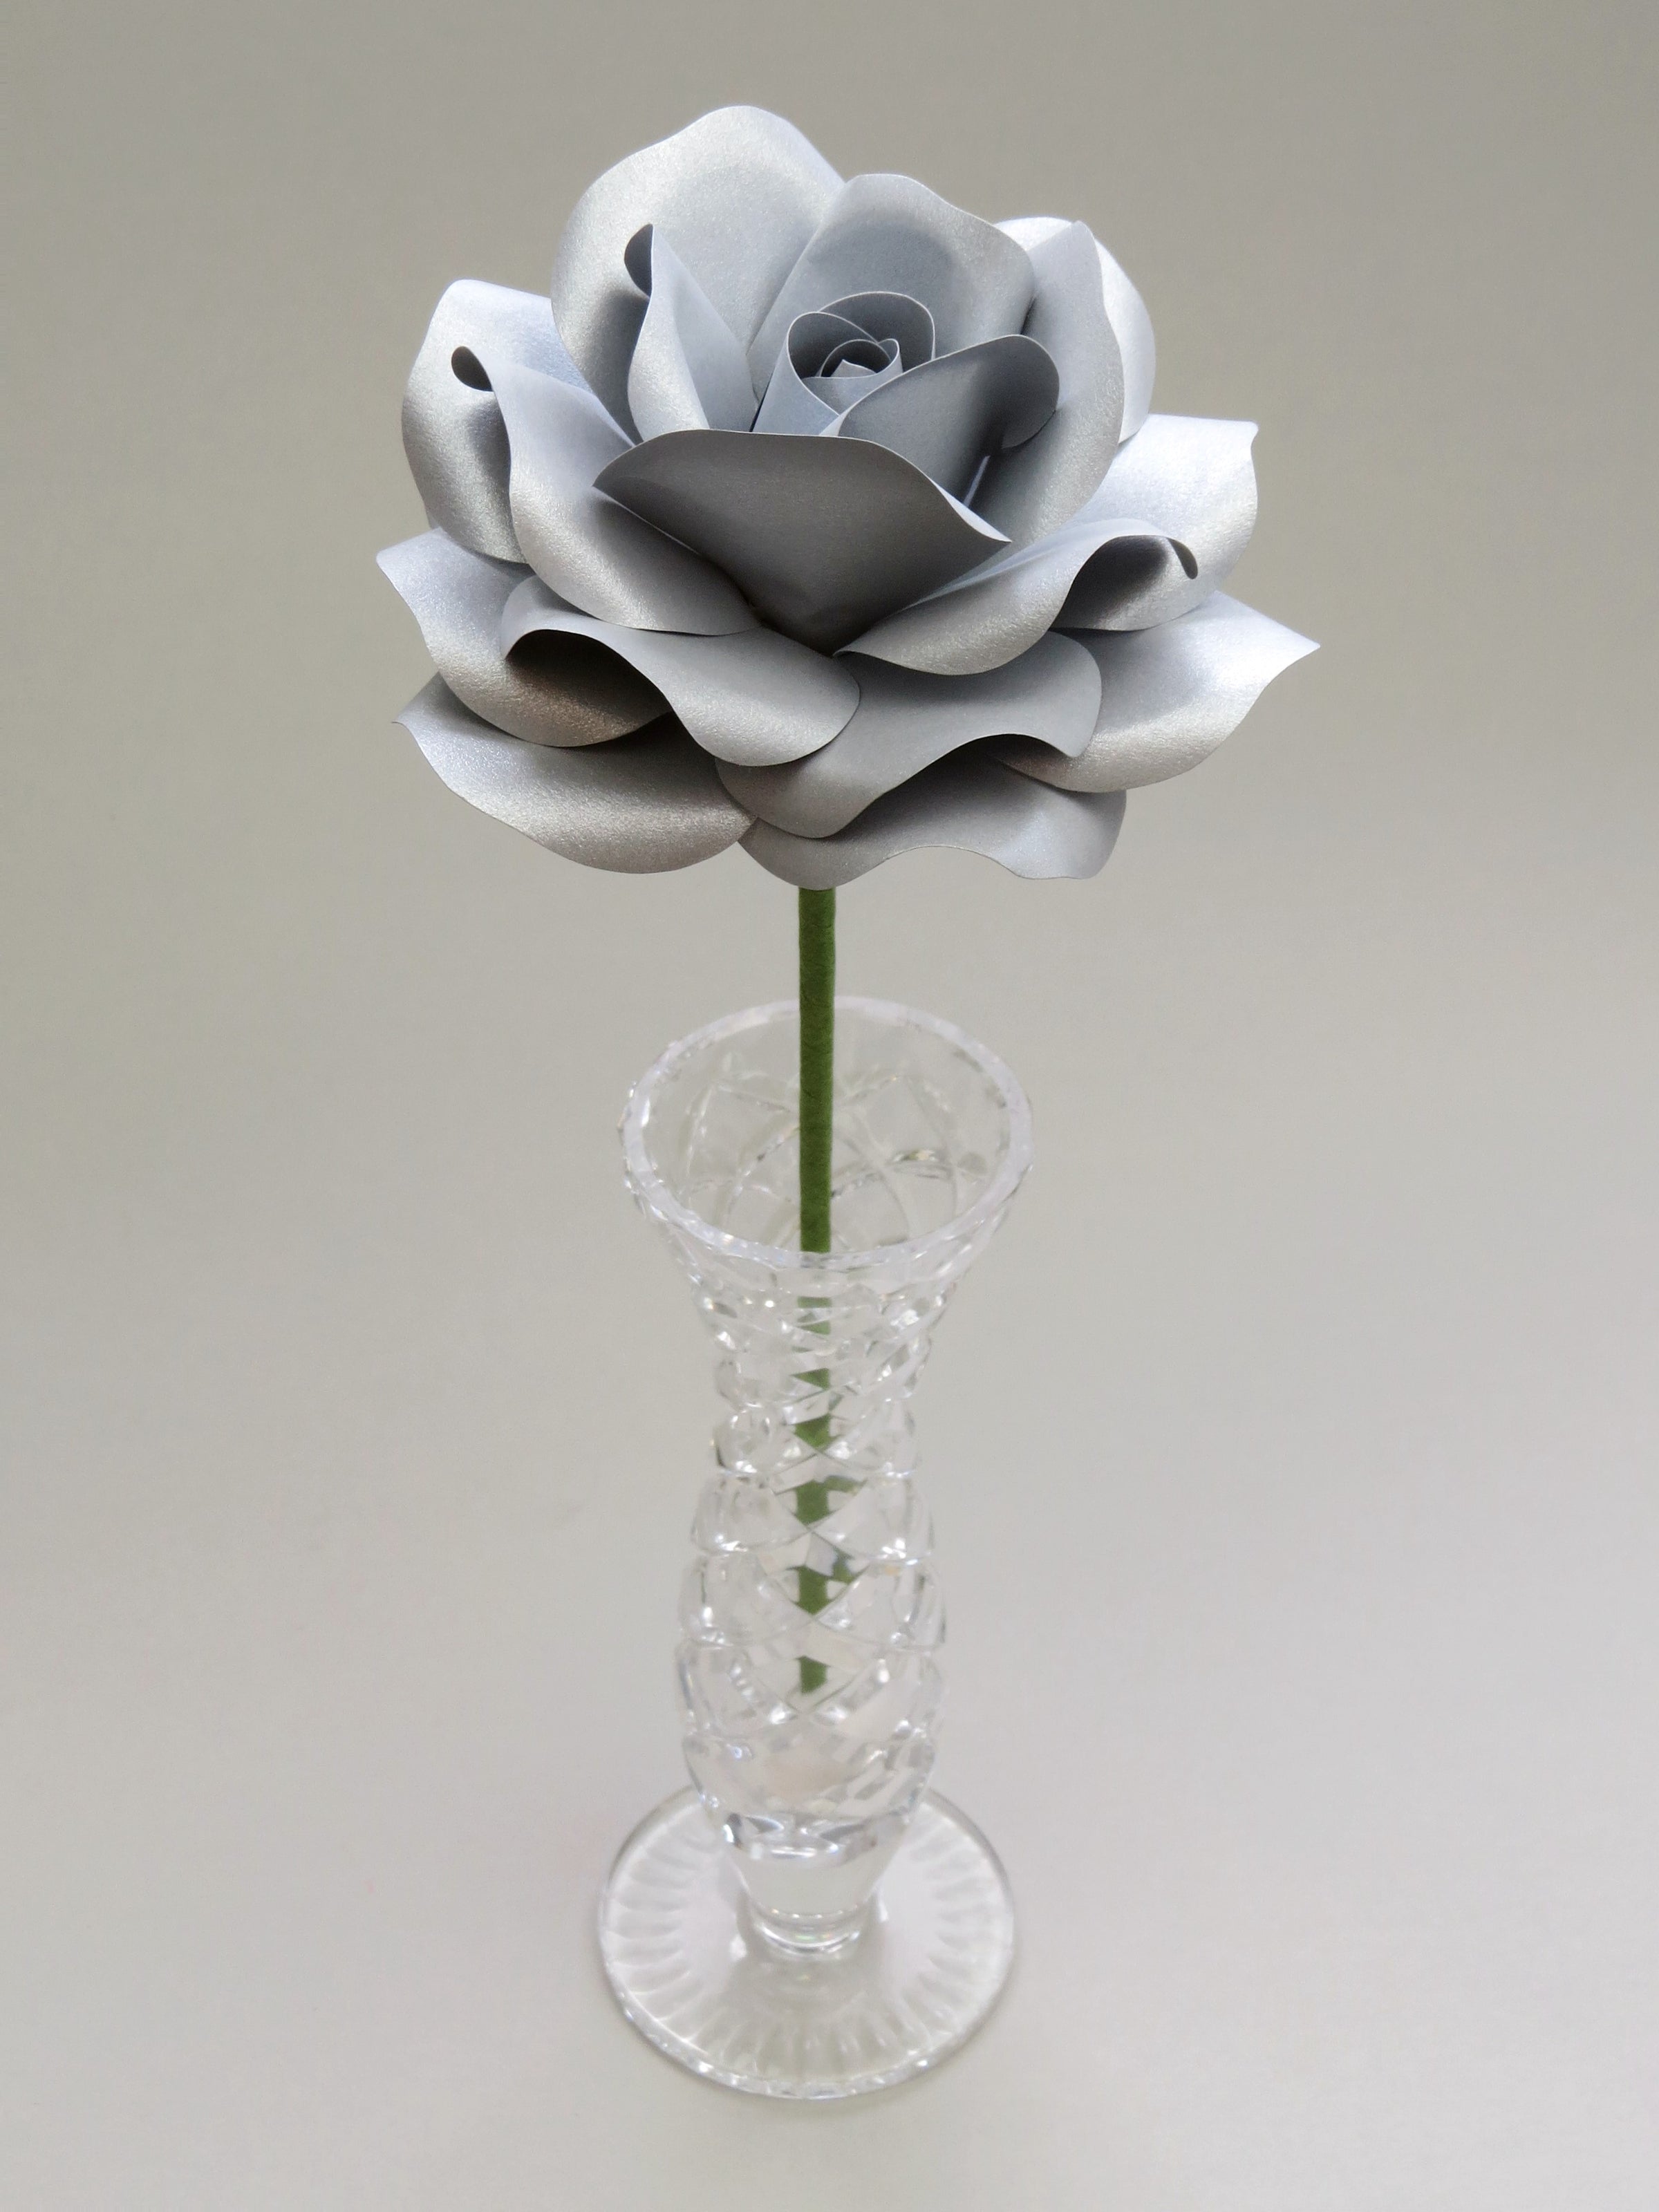 Leafless steel paper rose standing in a slender glass vase